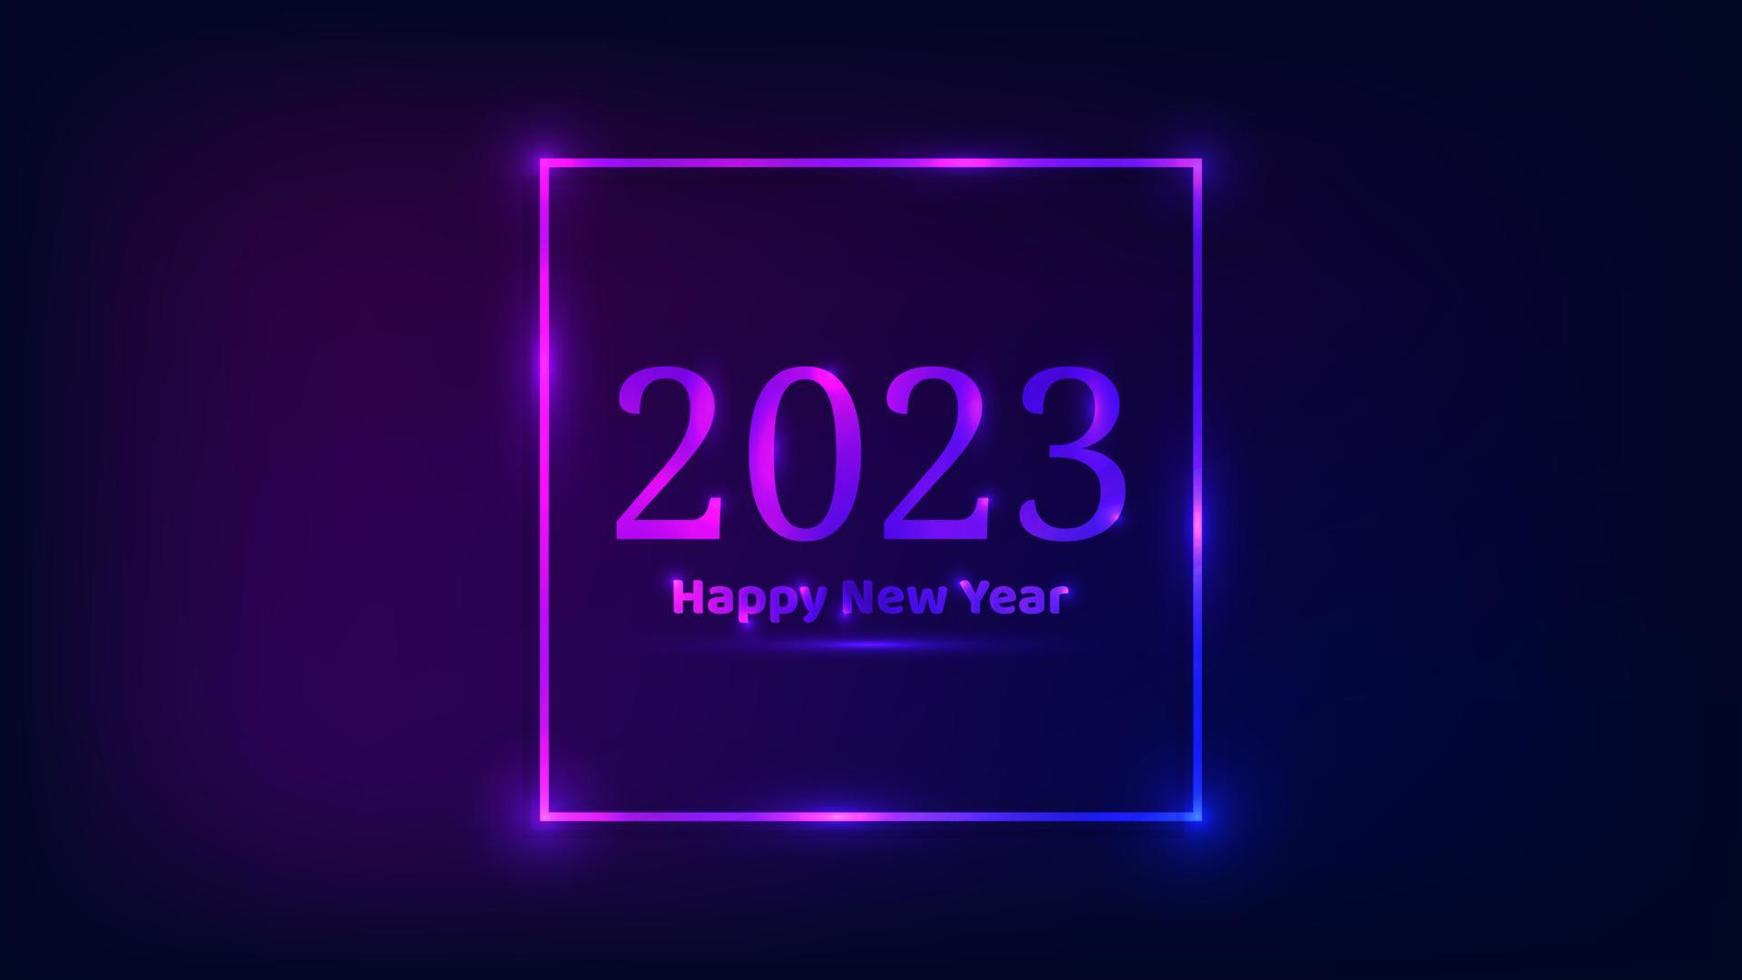 2023 feliz año nuevo fondo de neón. marco cuadrado de neón con efectos brillantes para tarjetas de felicitación navideñas, volantes o carteles. ilustración vectorial vector